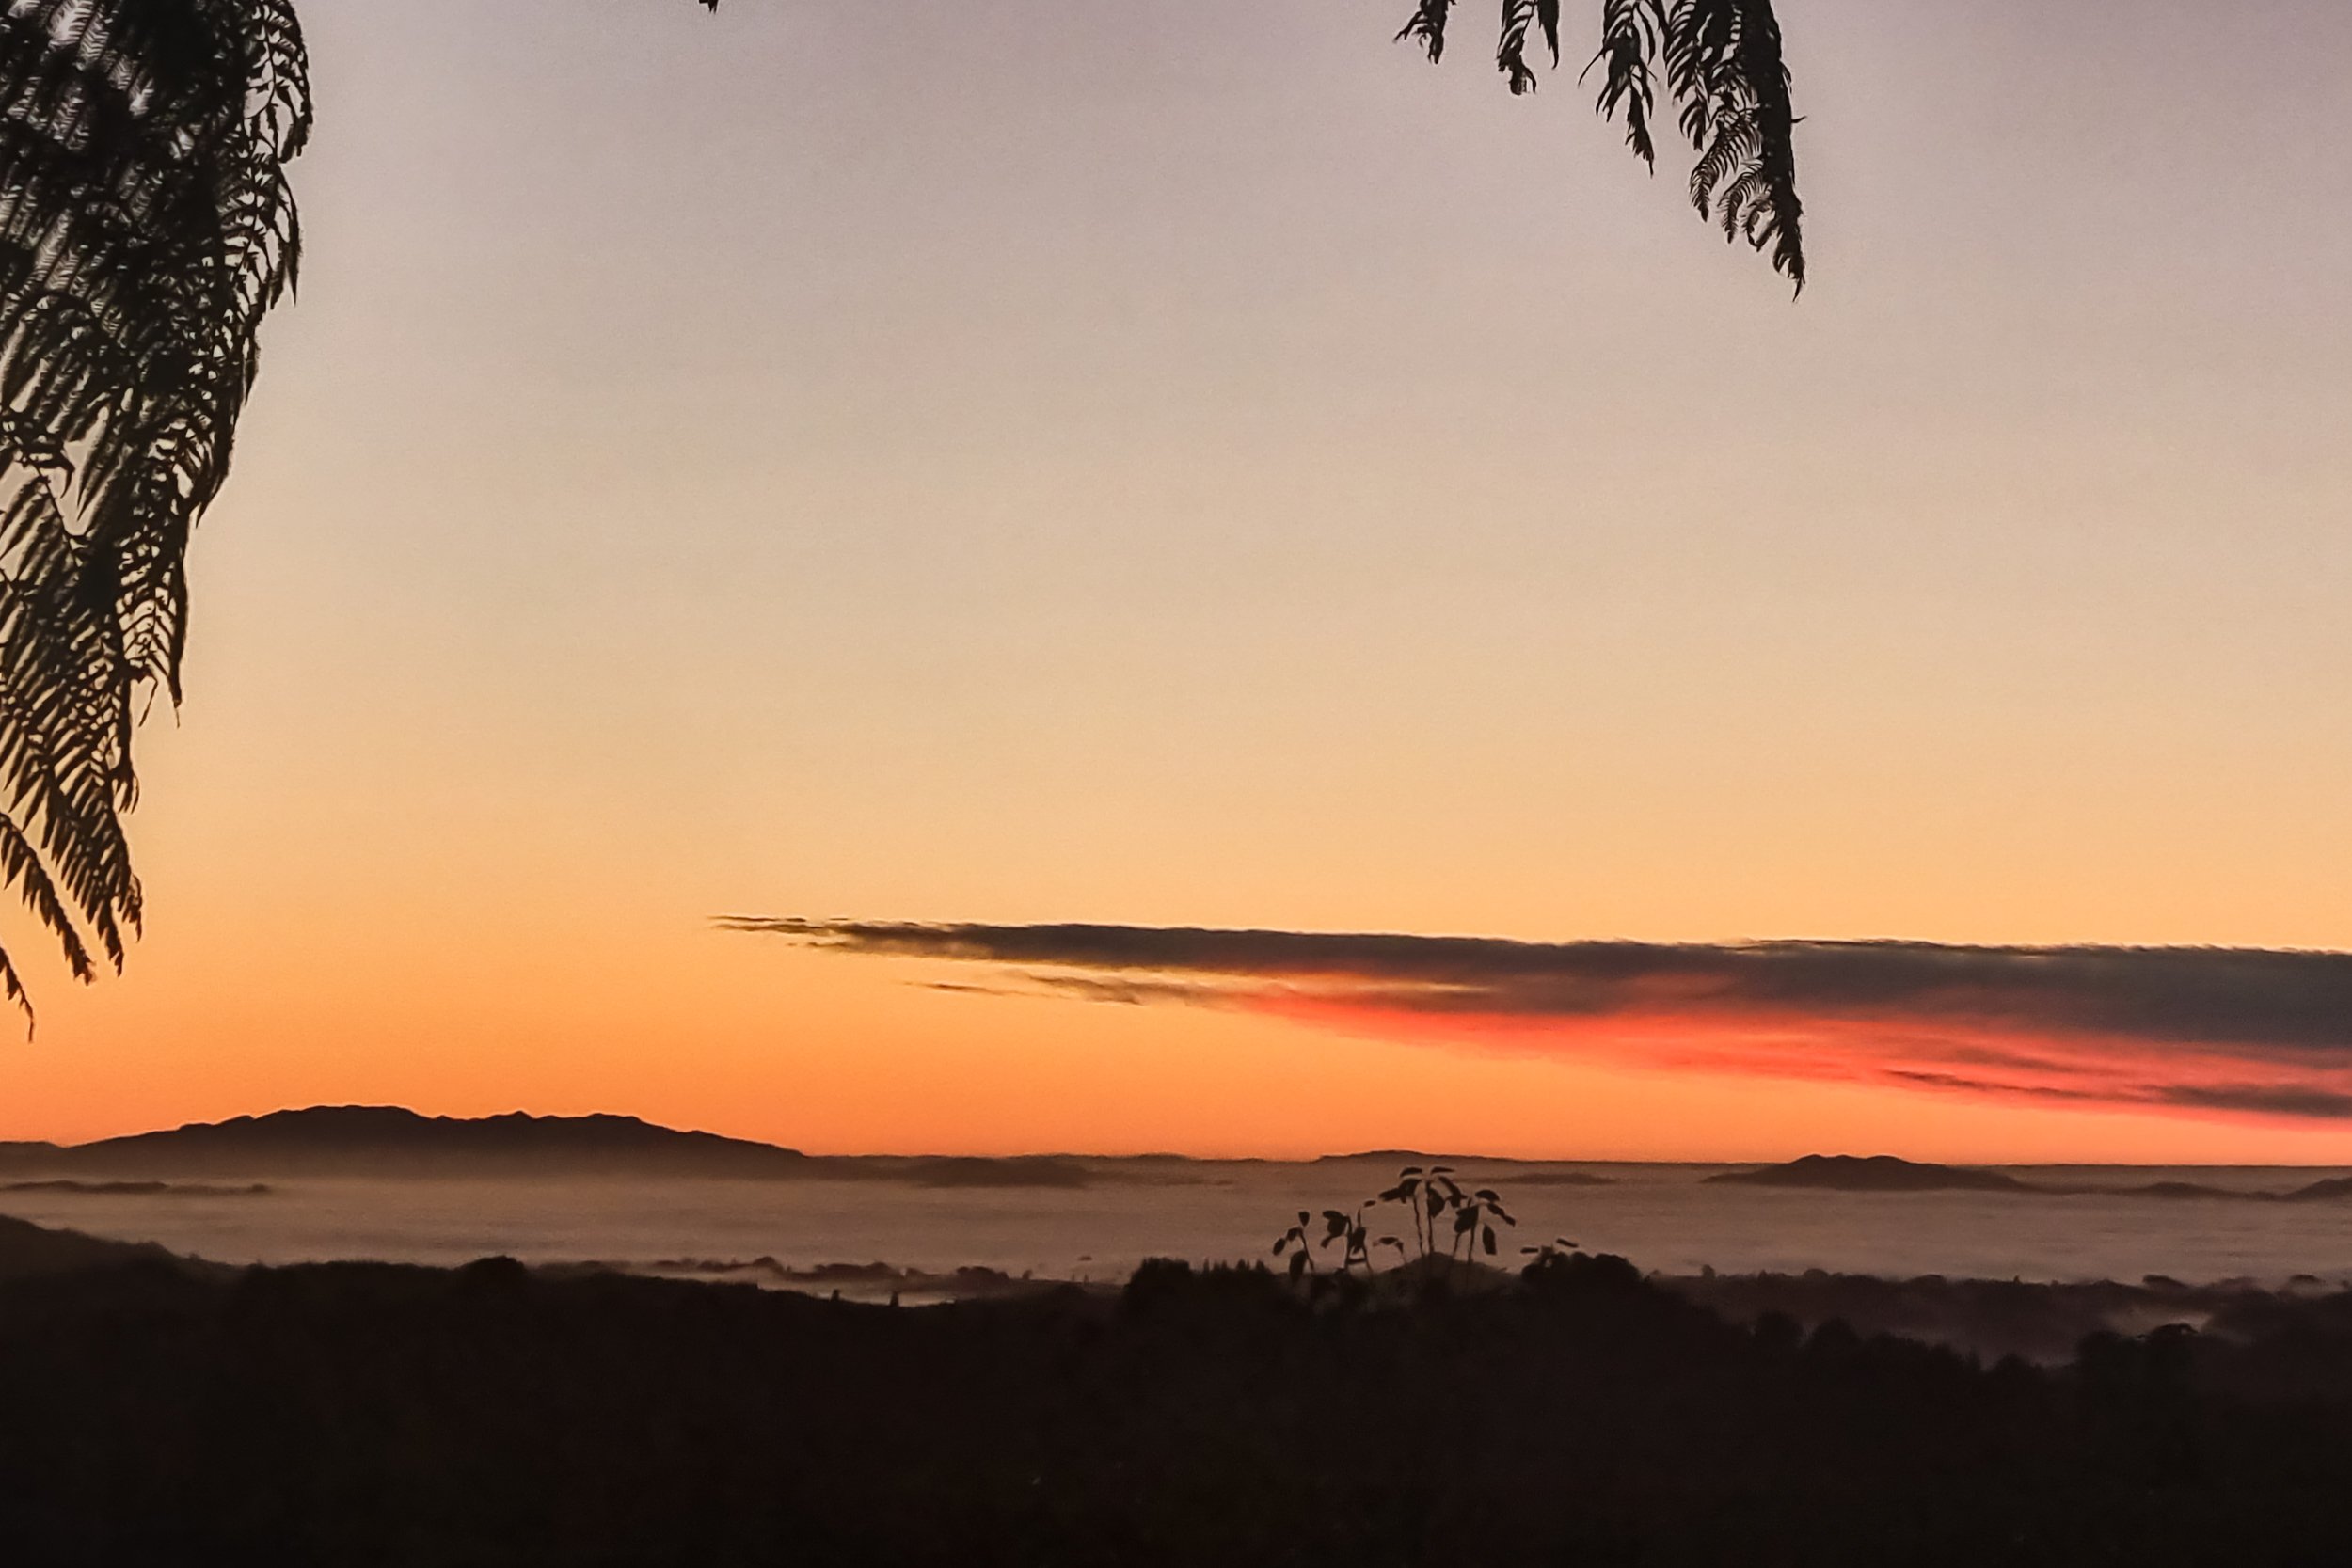 The Iconic Te Tiro morning cottage sunrise warming up the sleepy foggy Waitomo landscape